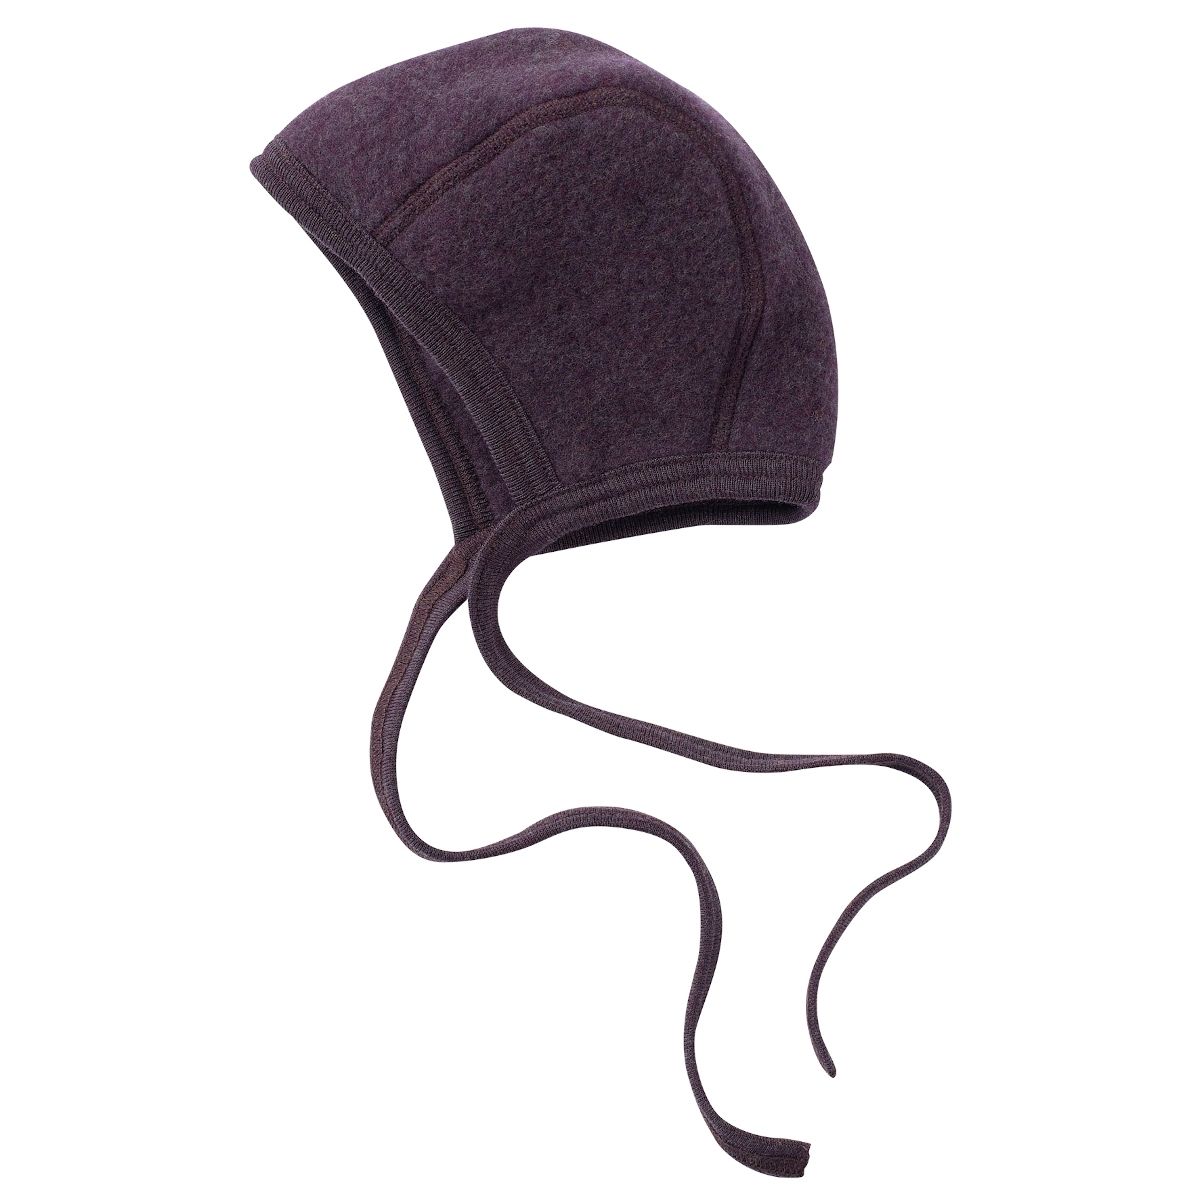 ENGEL Natur Baby bonnet Purple melange 575550-059E 